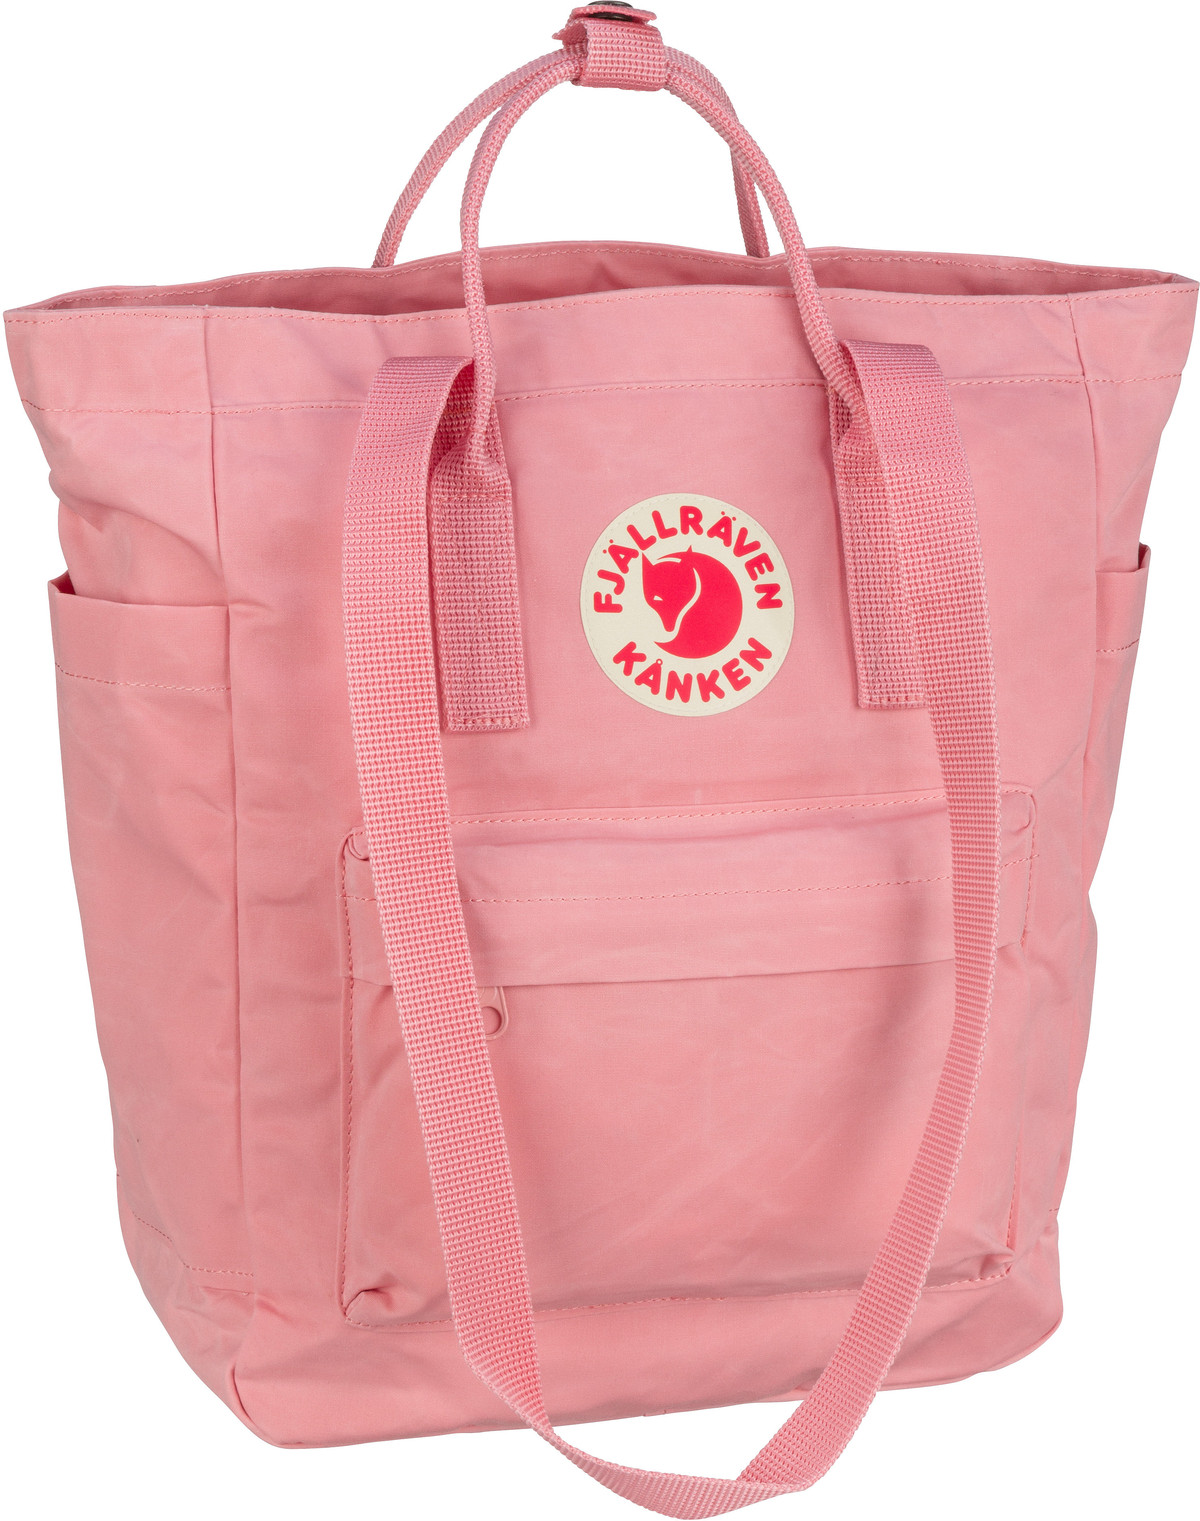 Fjällräven Kanken Totepack  in Pink (14 Liter), Rucksack / Backpack